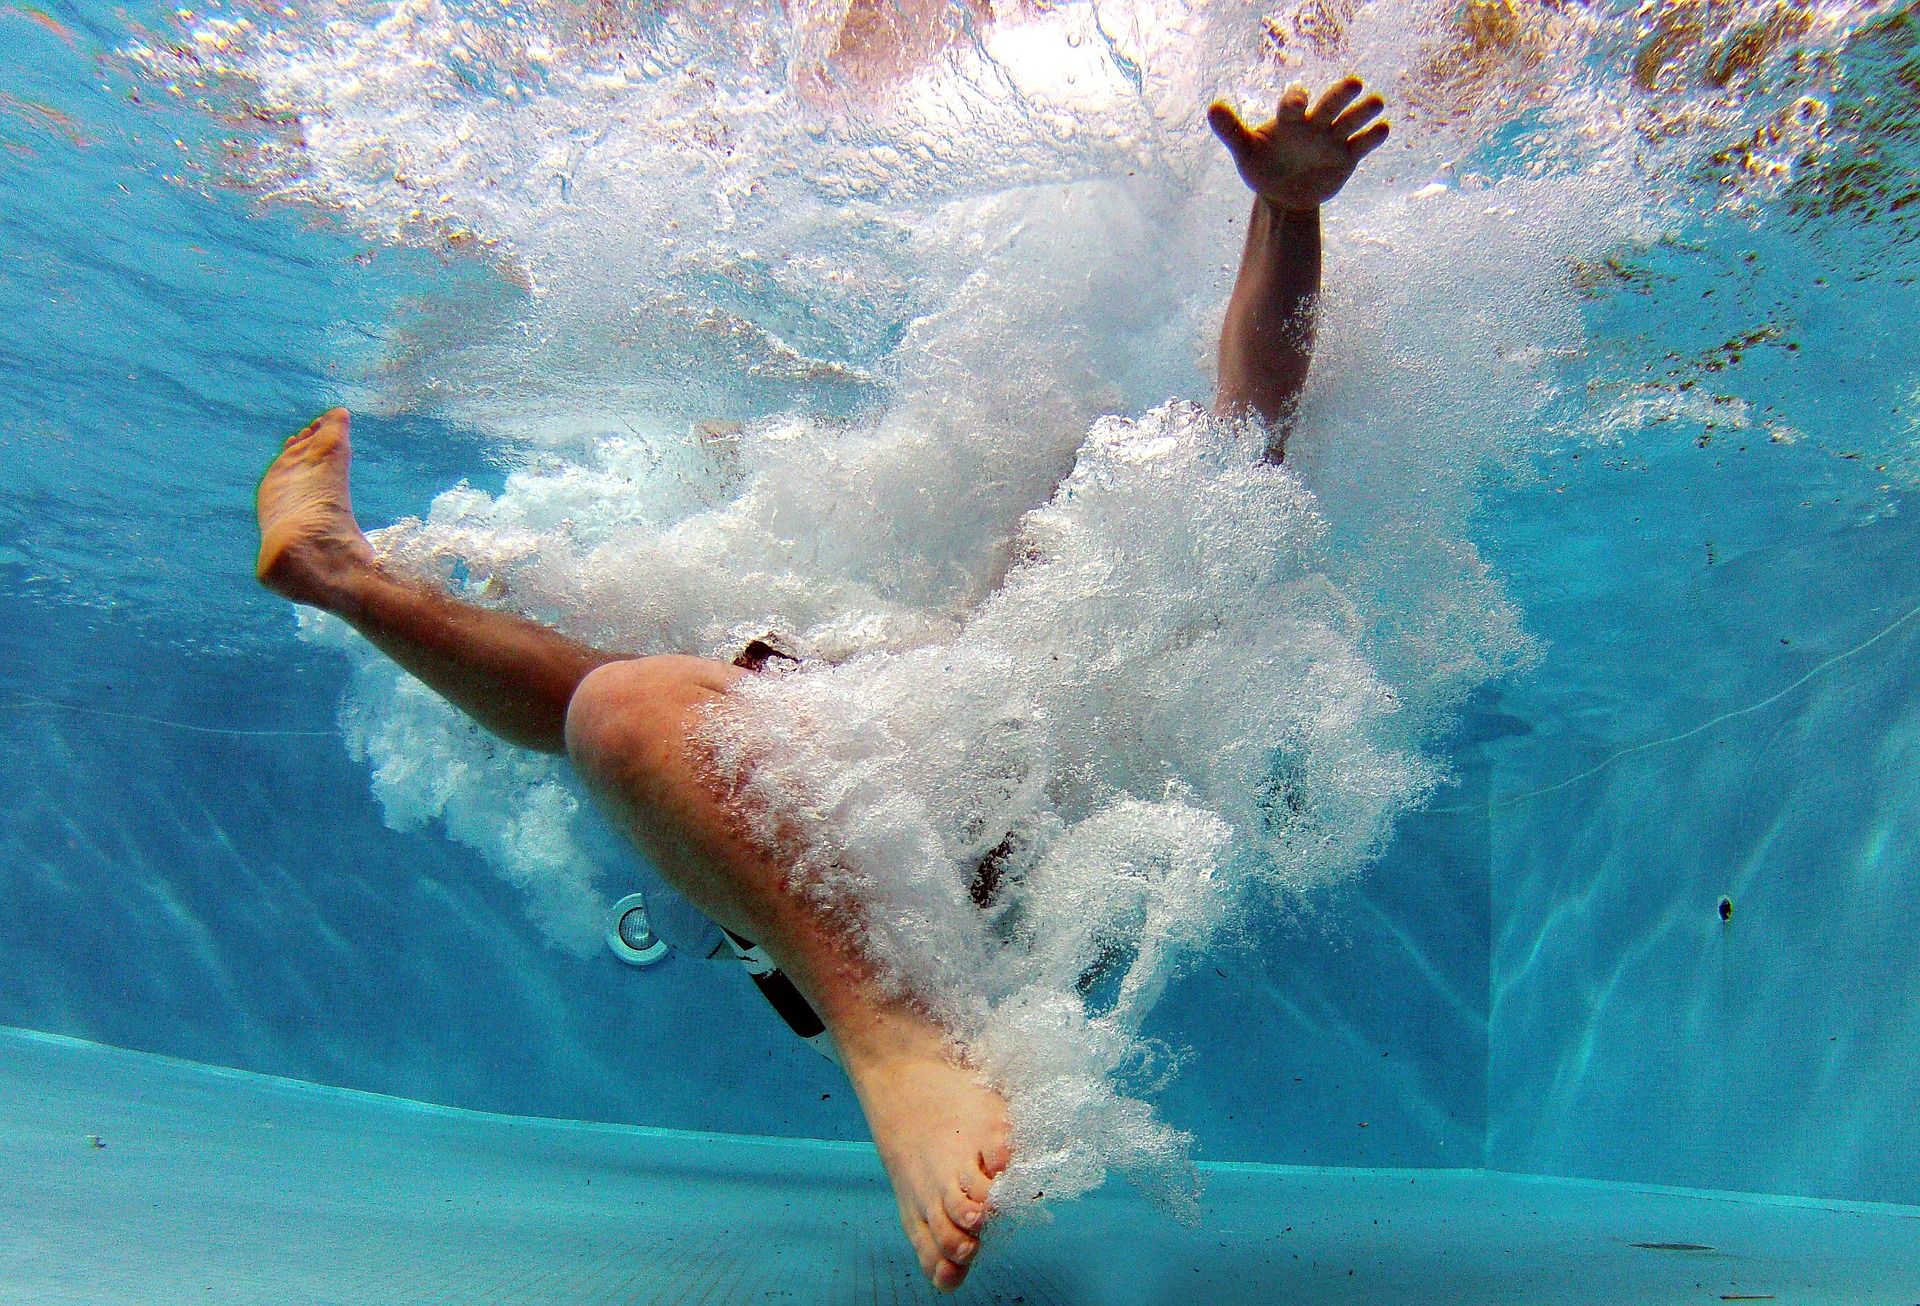 Persona se baña en una piscina